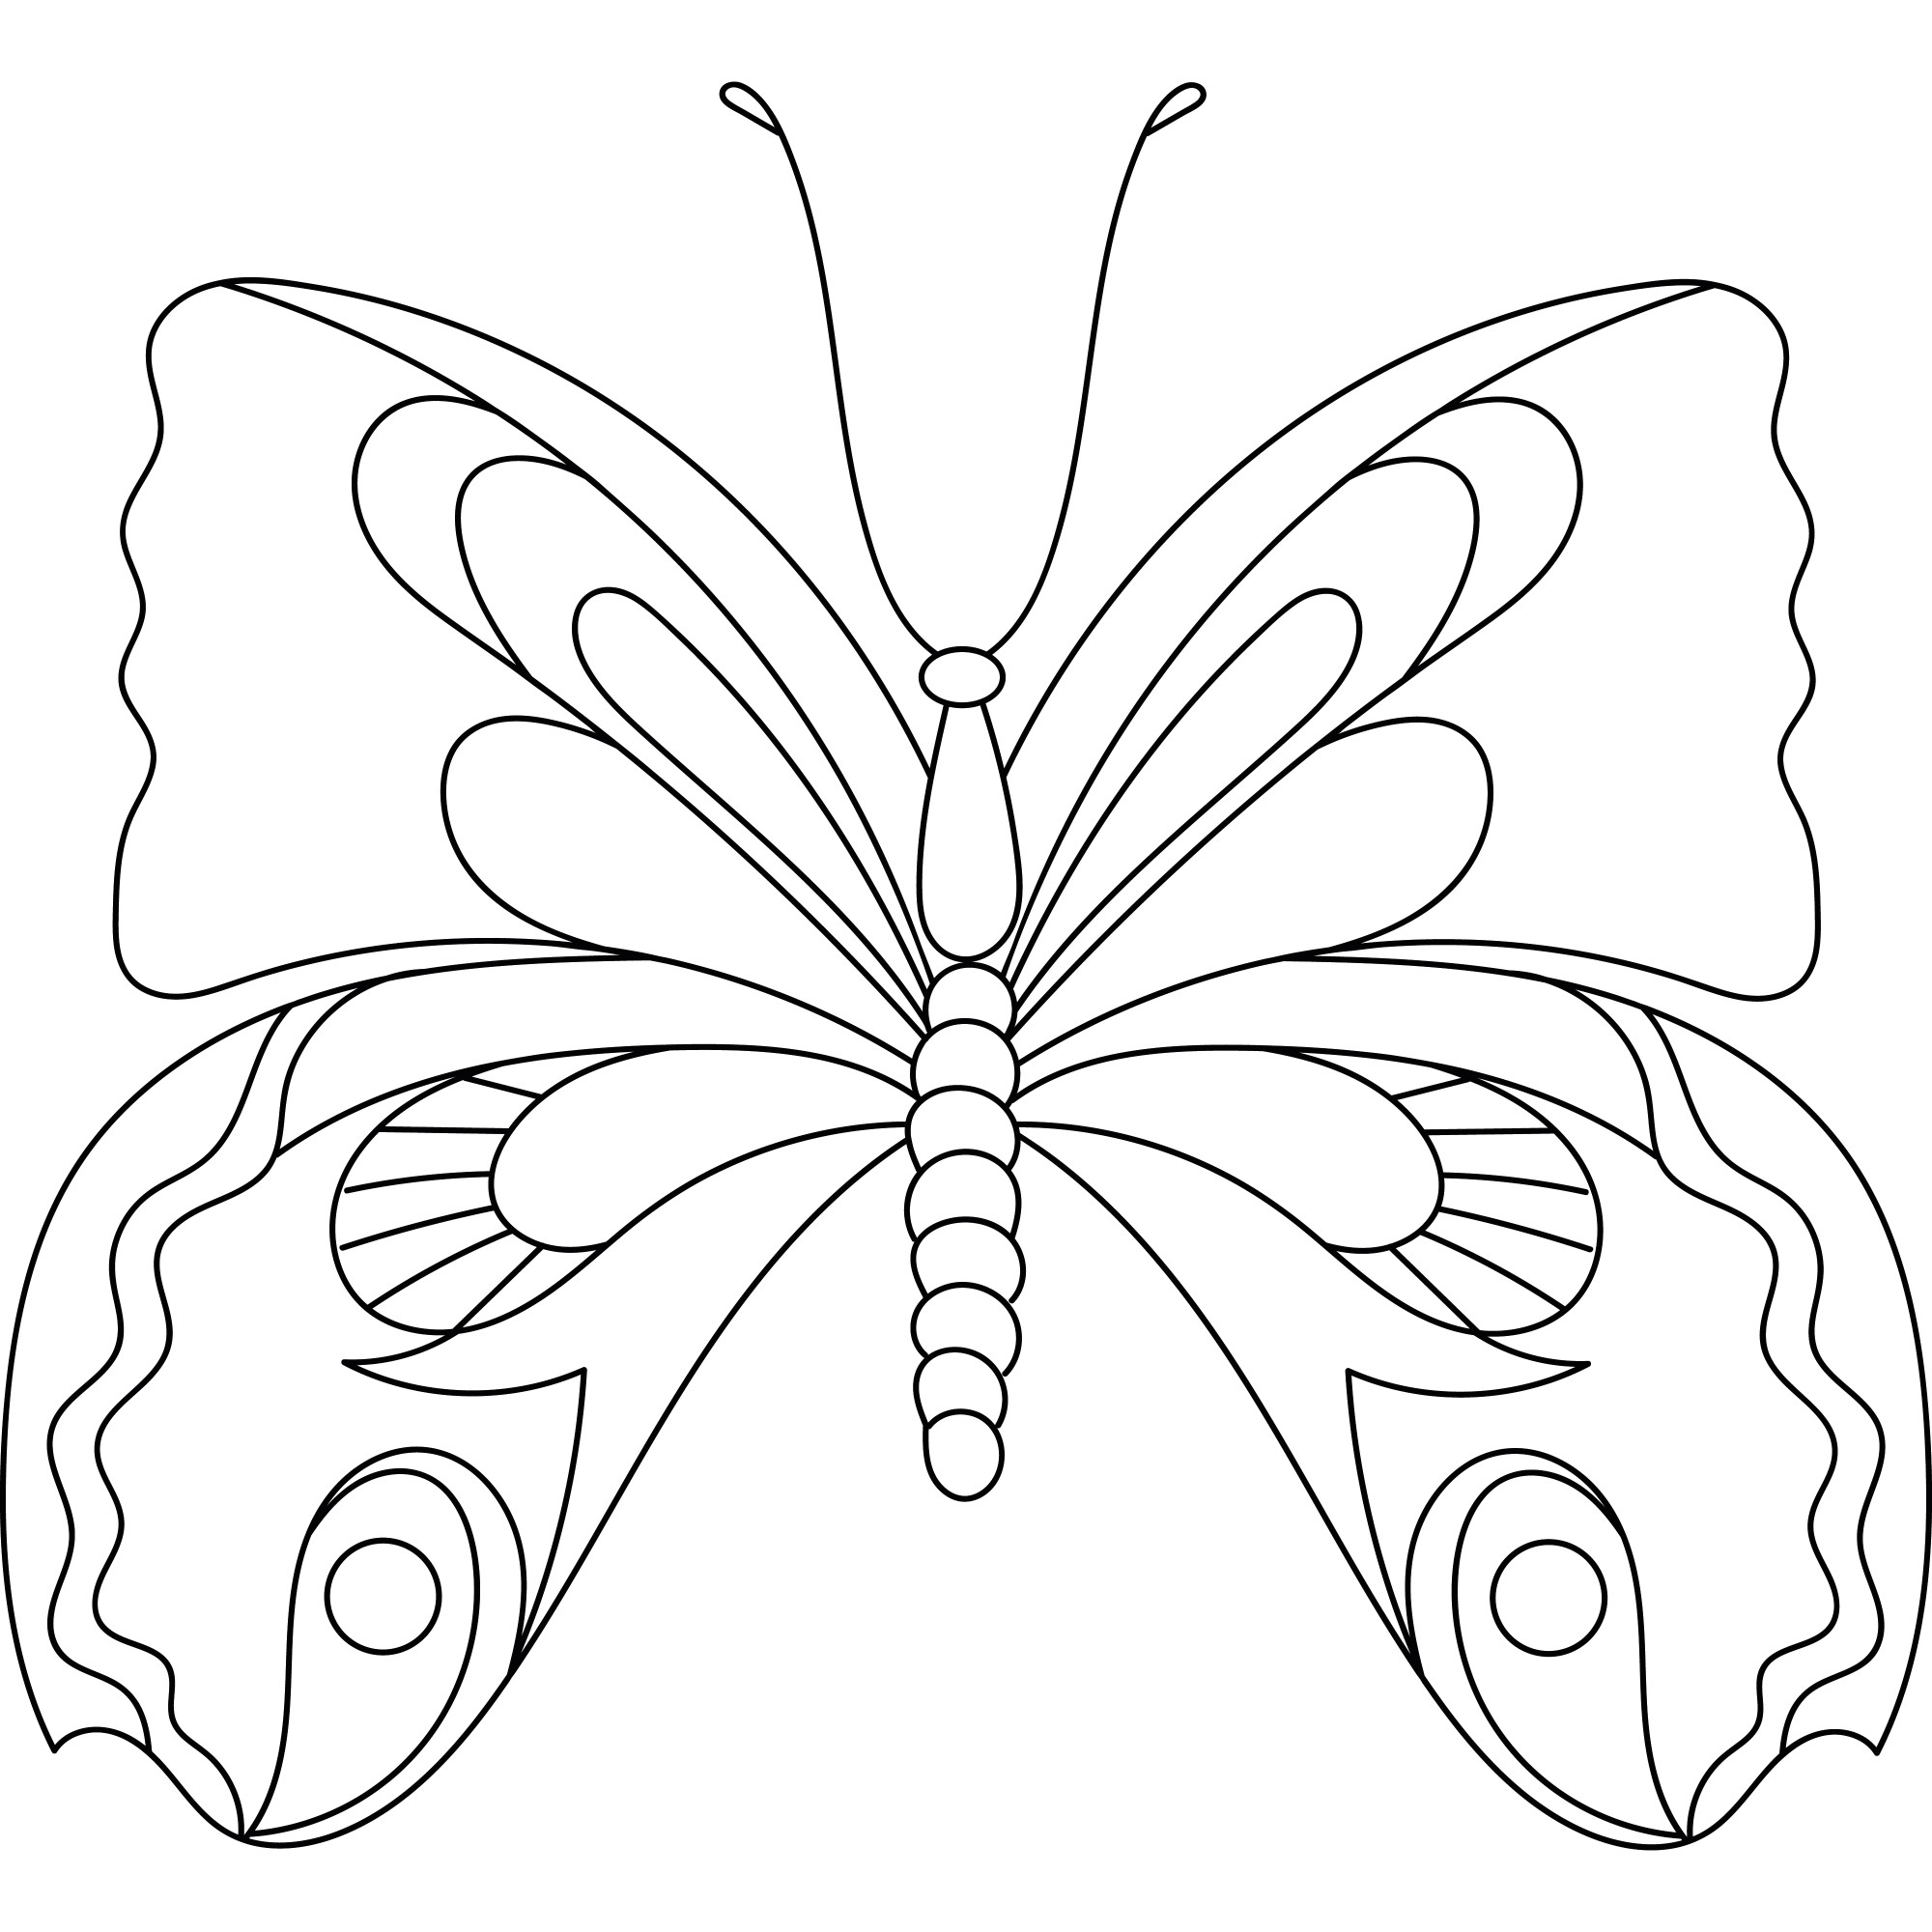 Раскраска для детей: грациозная бабочка